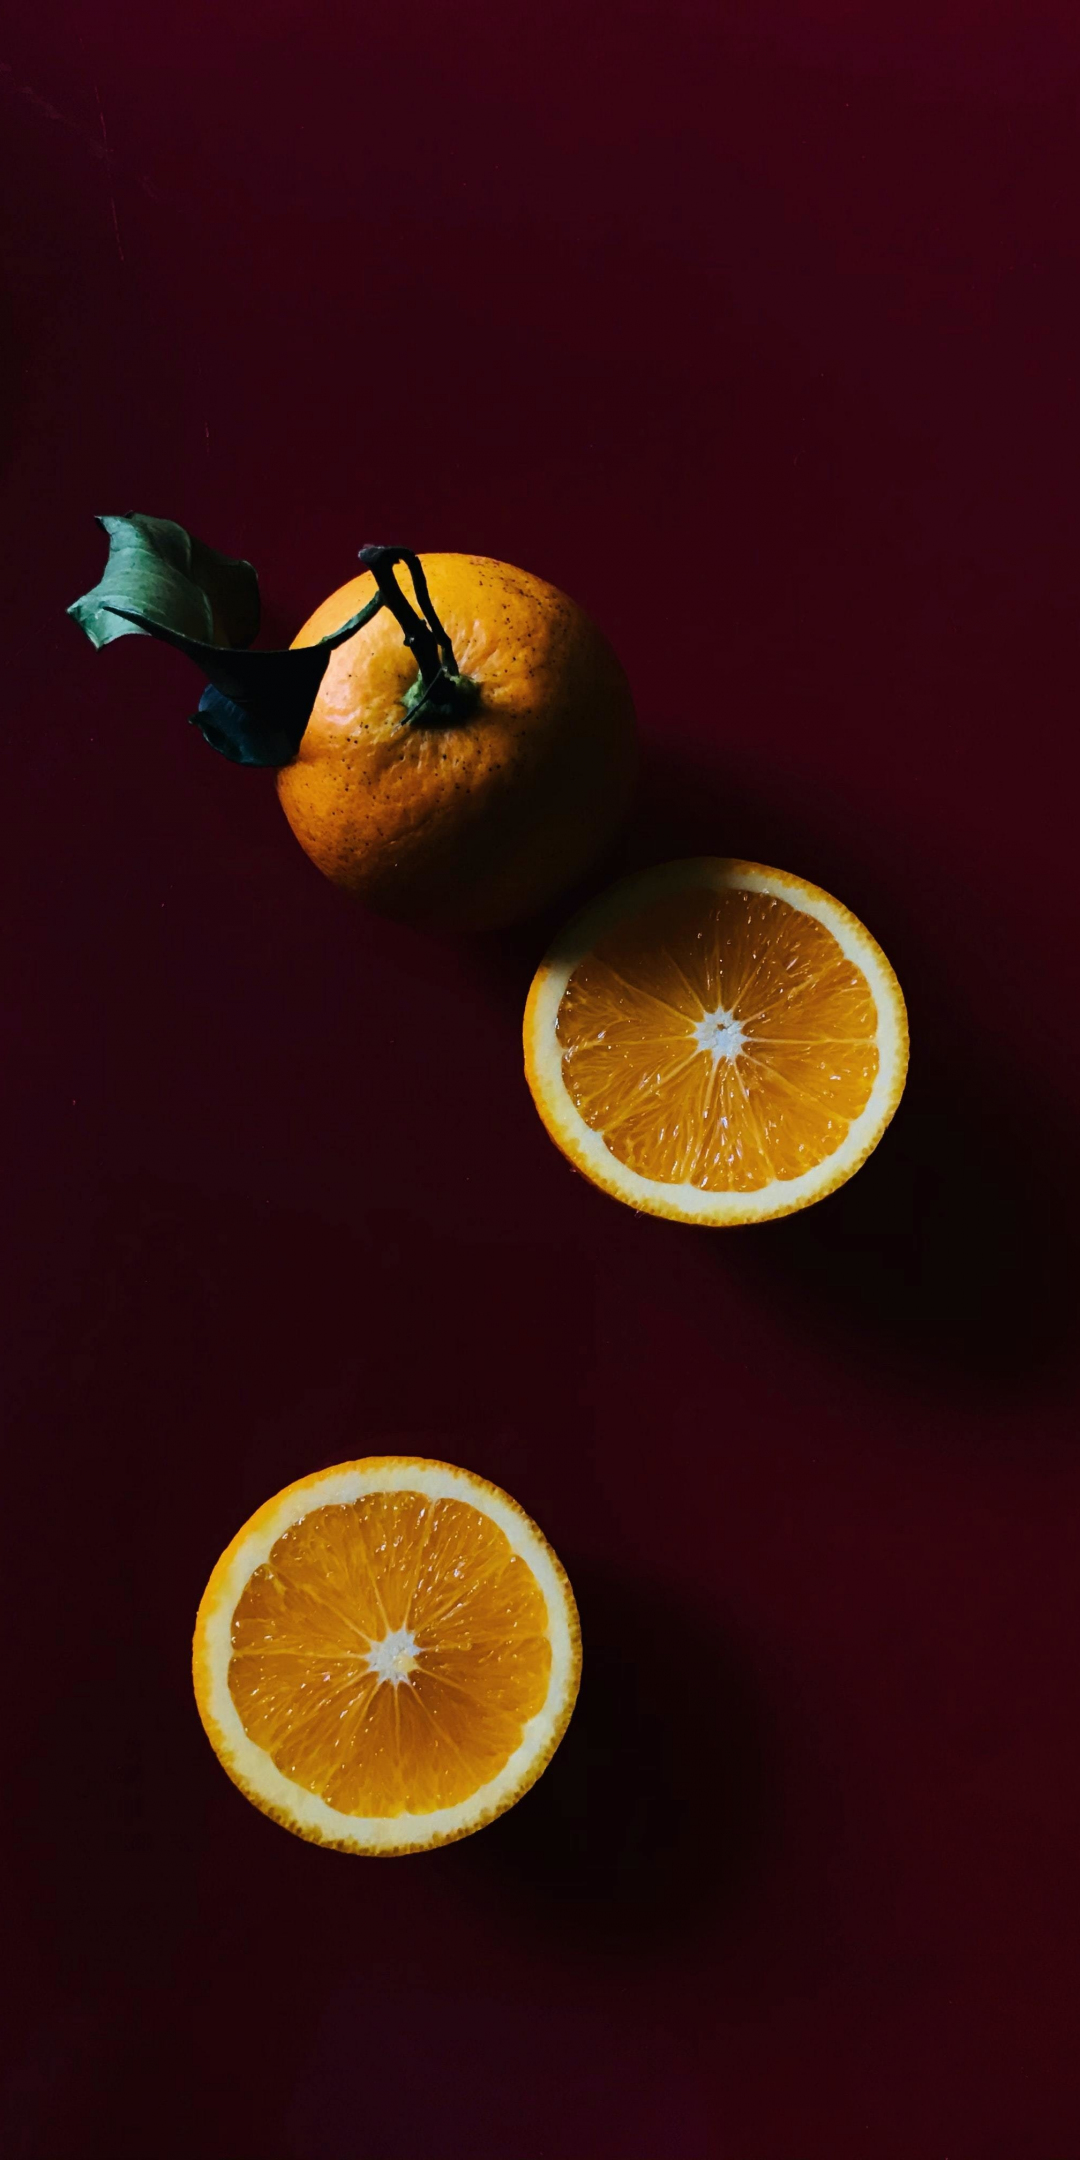 Lemon, oranges fruit slices, 1080x2160 wallpaper